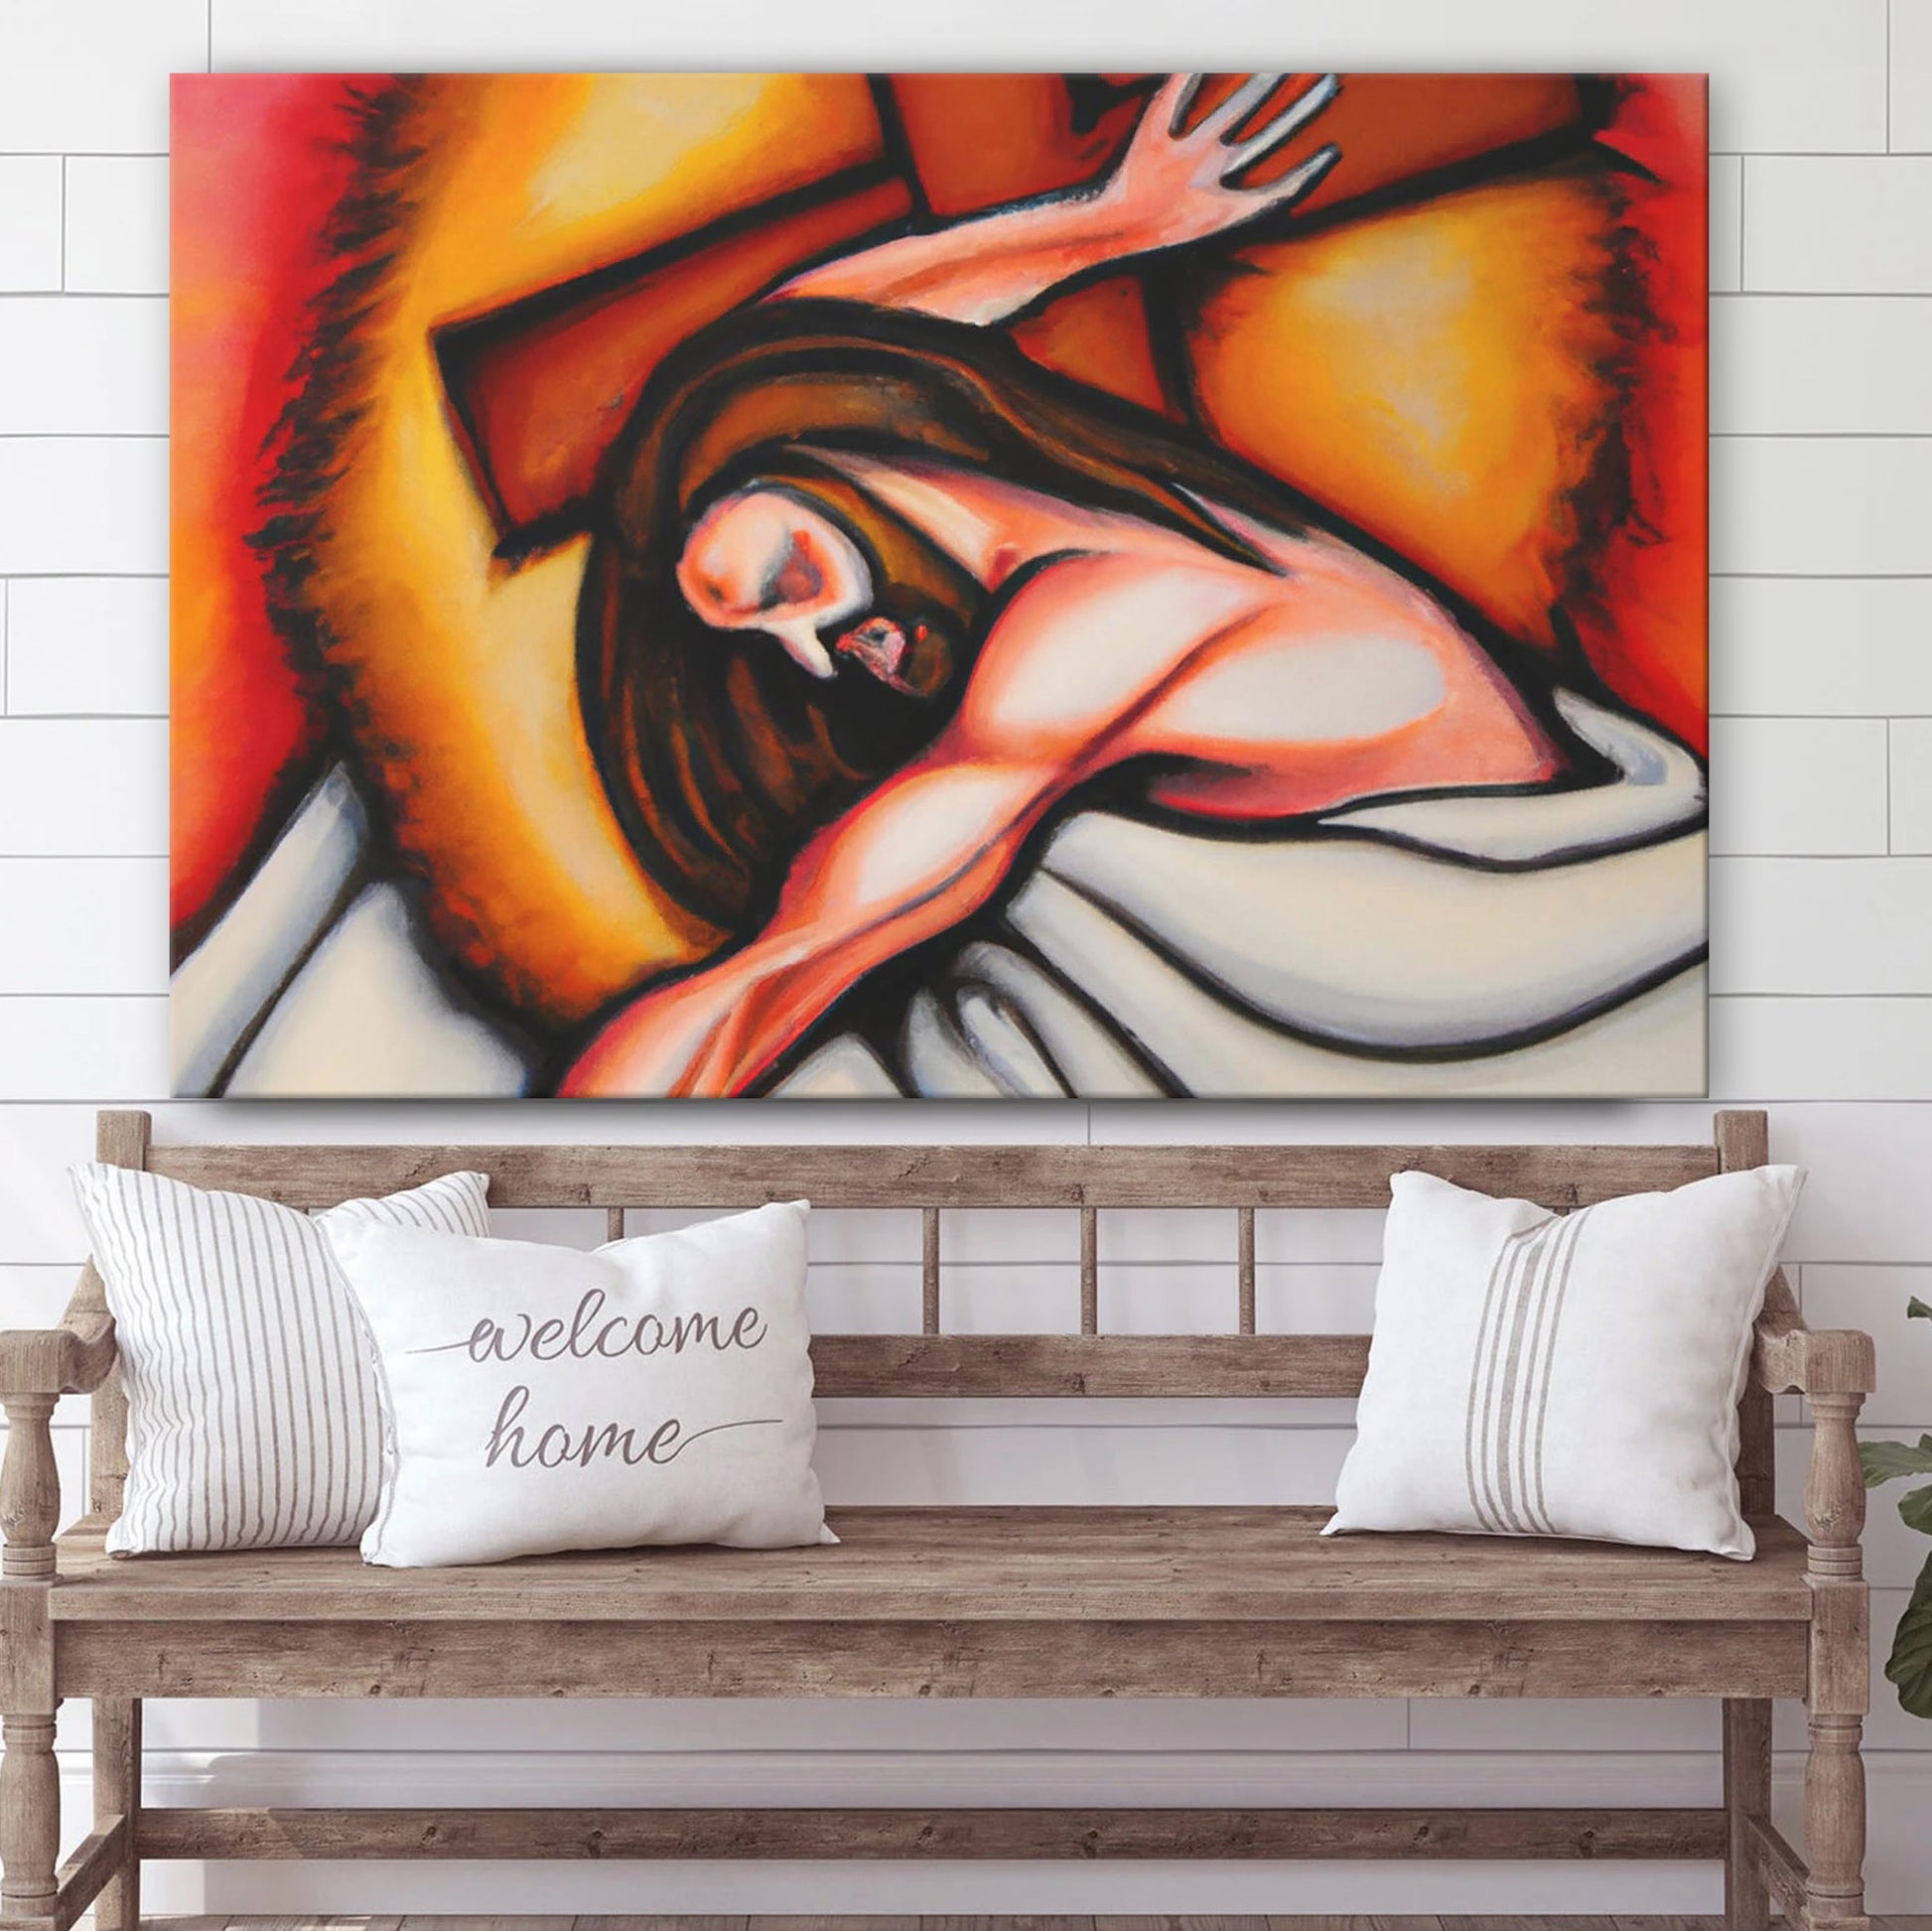 Jesus Christ Crucifixion Canvas - Canvas Picture - Jesus Canvas Pictures - Christian Wall Art